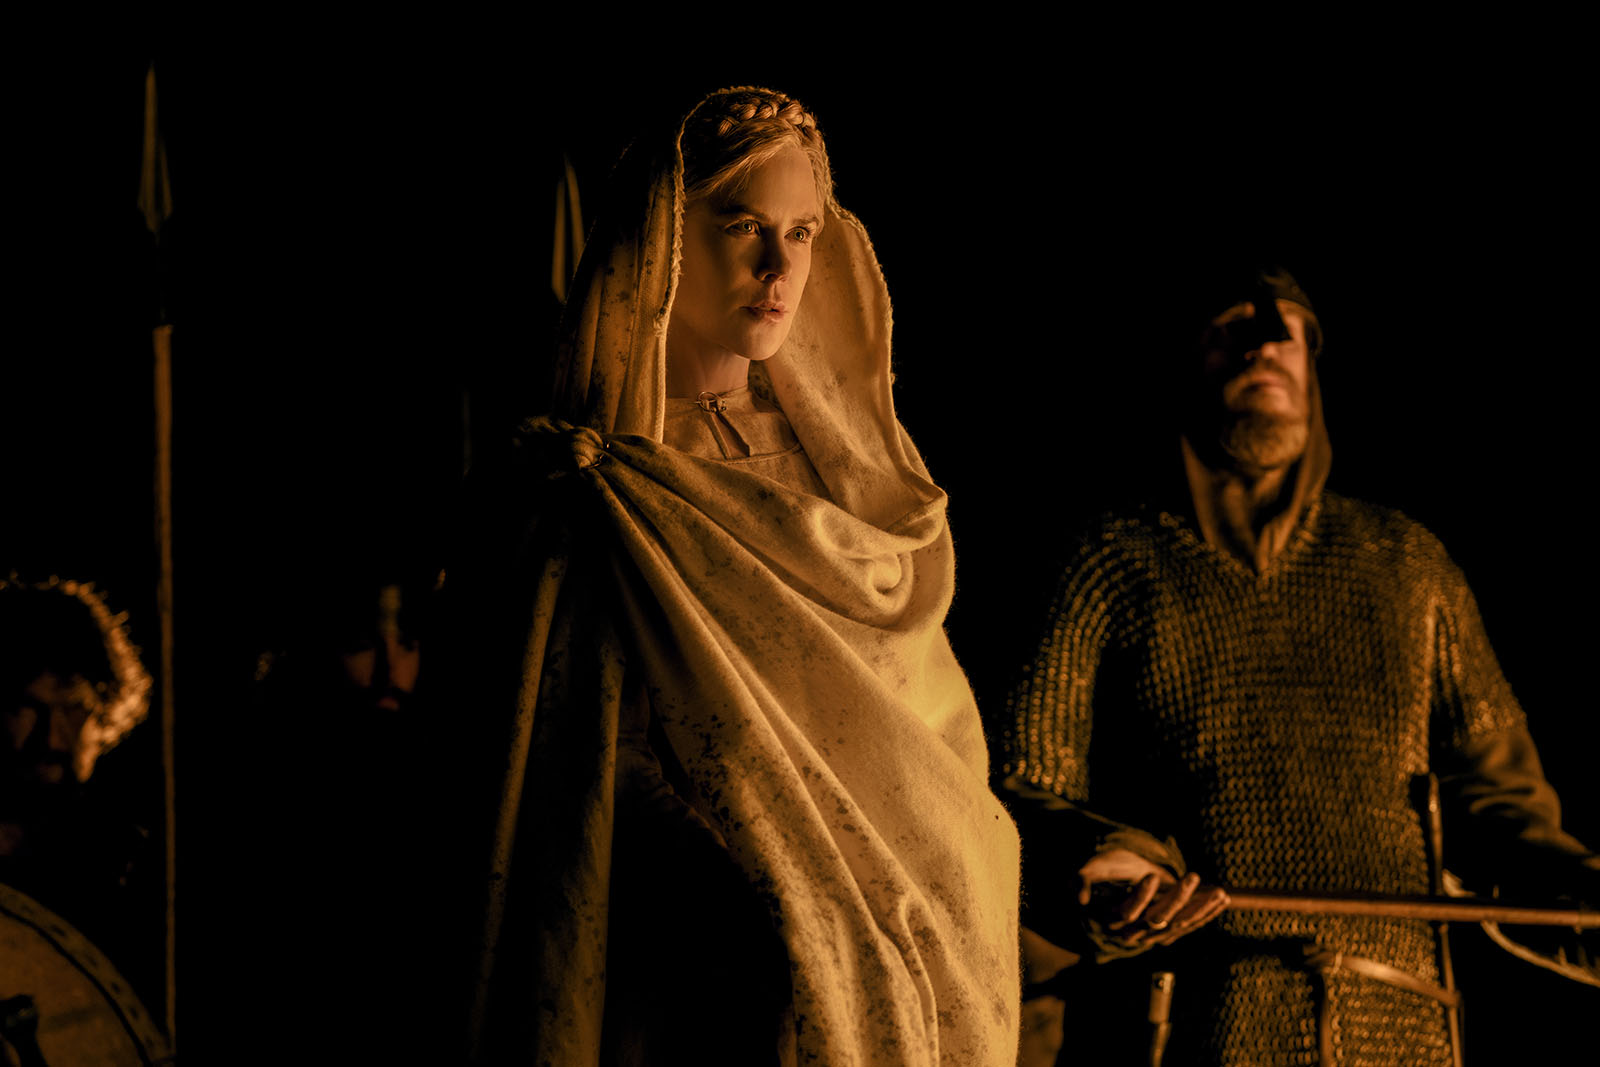 Nicole Kidman as Queen Gudrún in Robert Eggers’ The Northman. Image © Focus Features